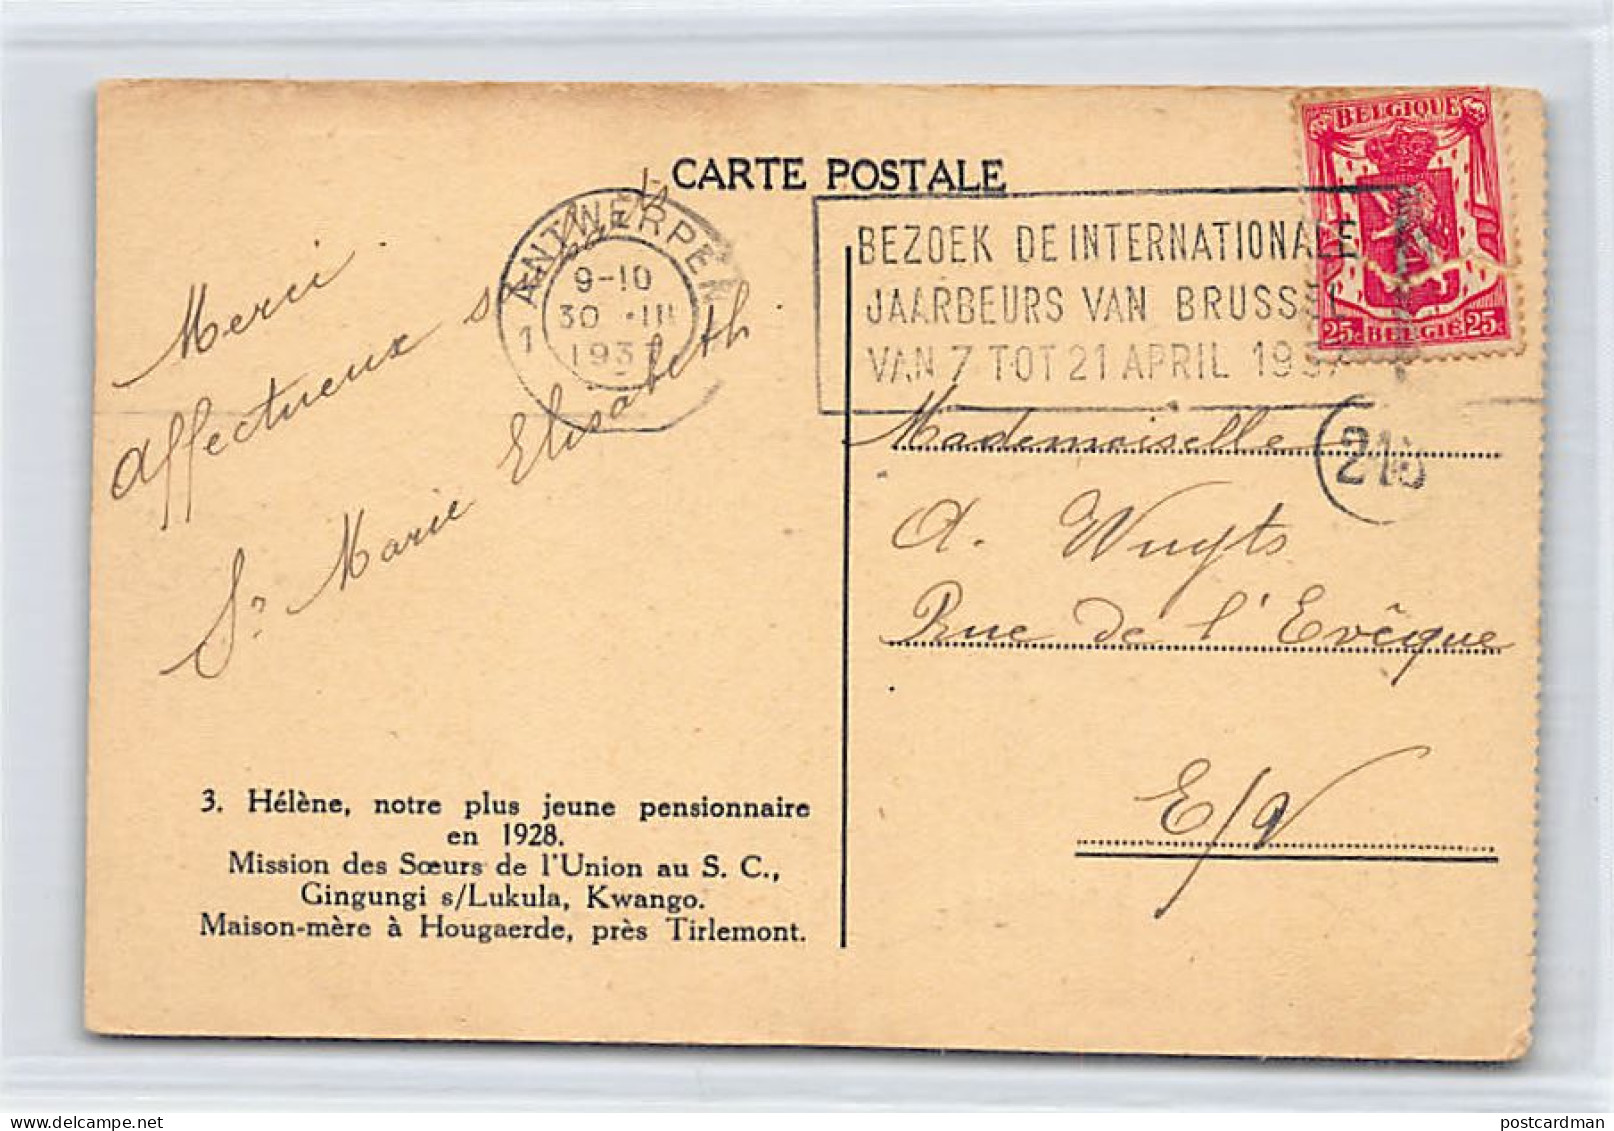 Congo Kinshasa - GINGUGI Sur Lukula (Kwango) - Hélène, Notre Plus Jeune Pensionnaire En 1928 - Ed. Mission Des Soeurs De - Belgian Congo